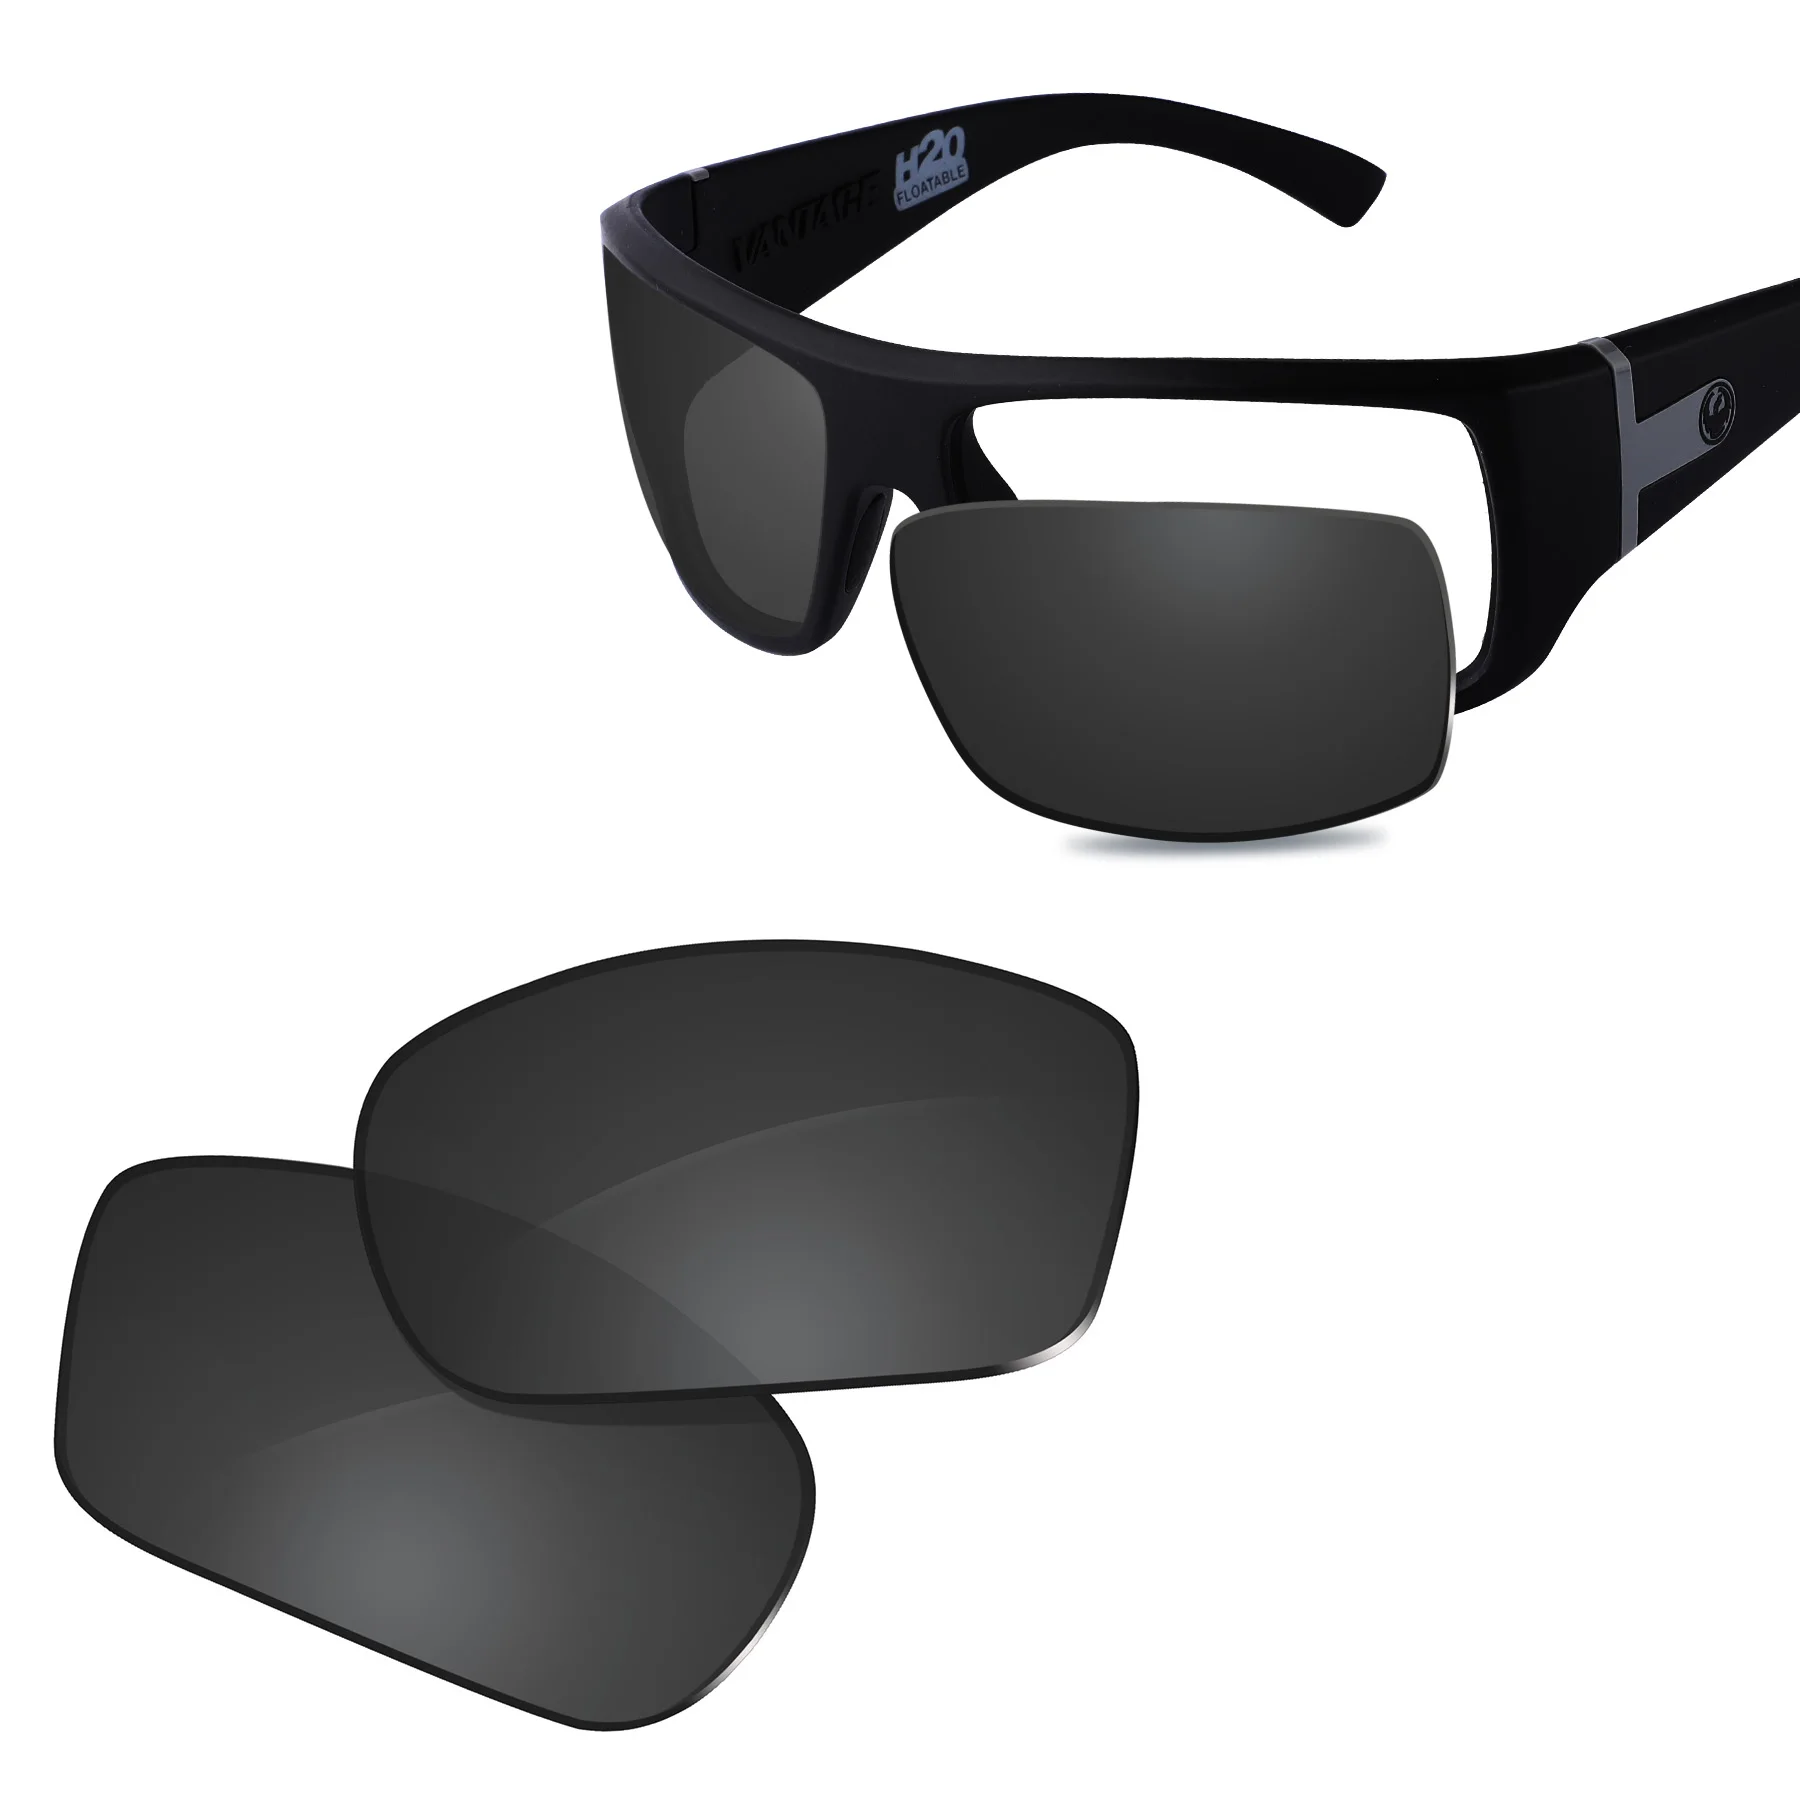 Glintbay جديد الأداء الاستقطاب استبدال العدسات ل التنين فانتاج النظارات الشمسية متعددة الألوان